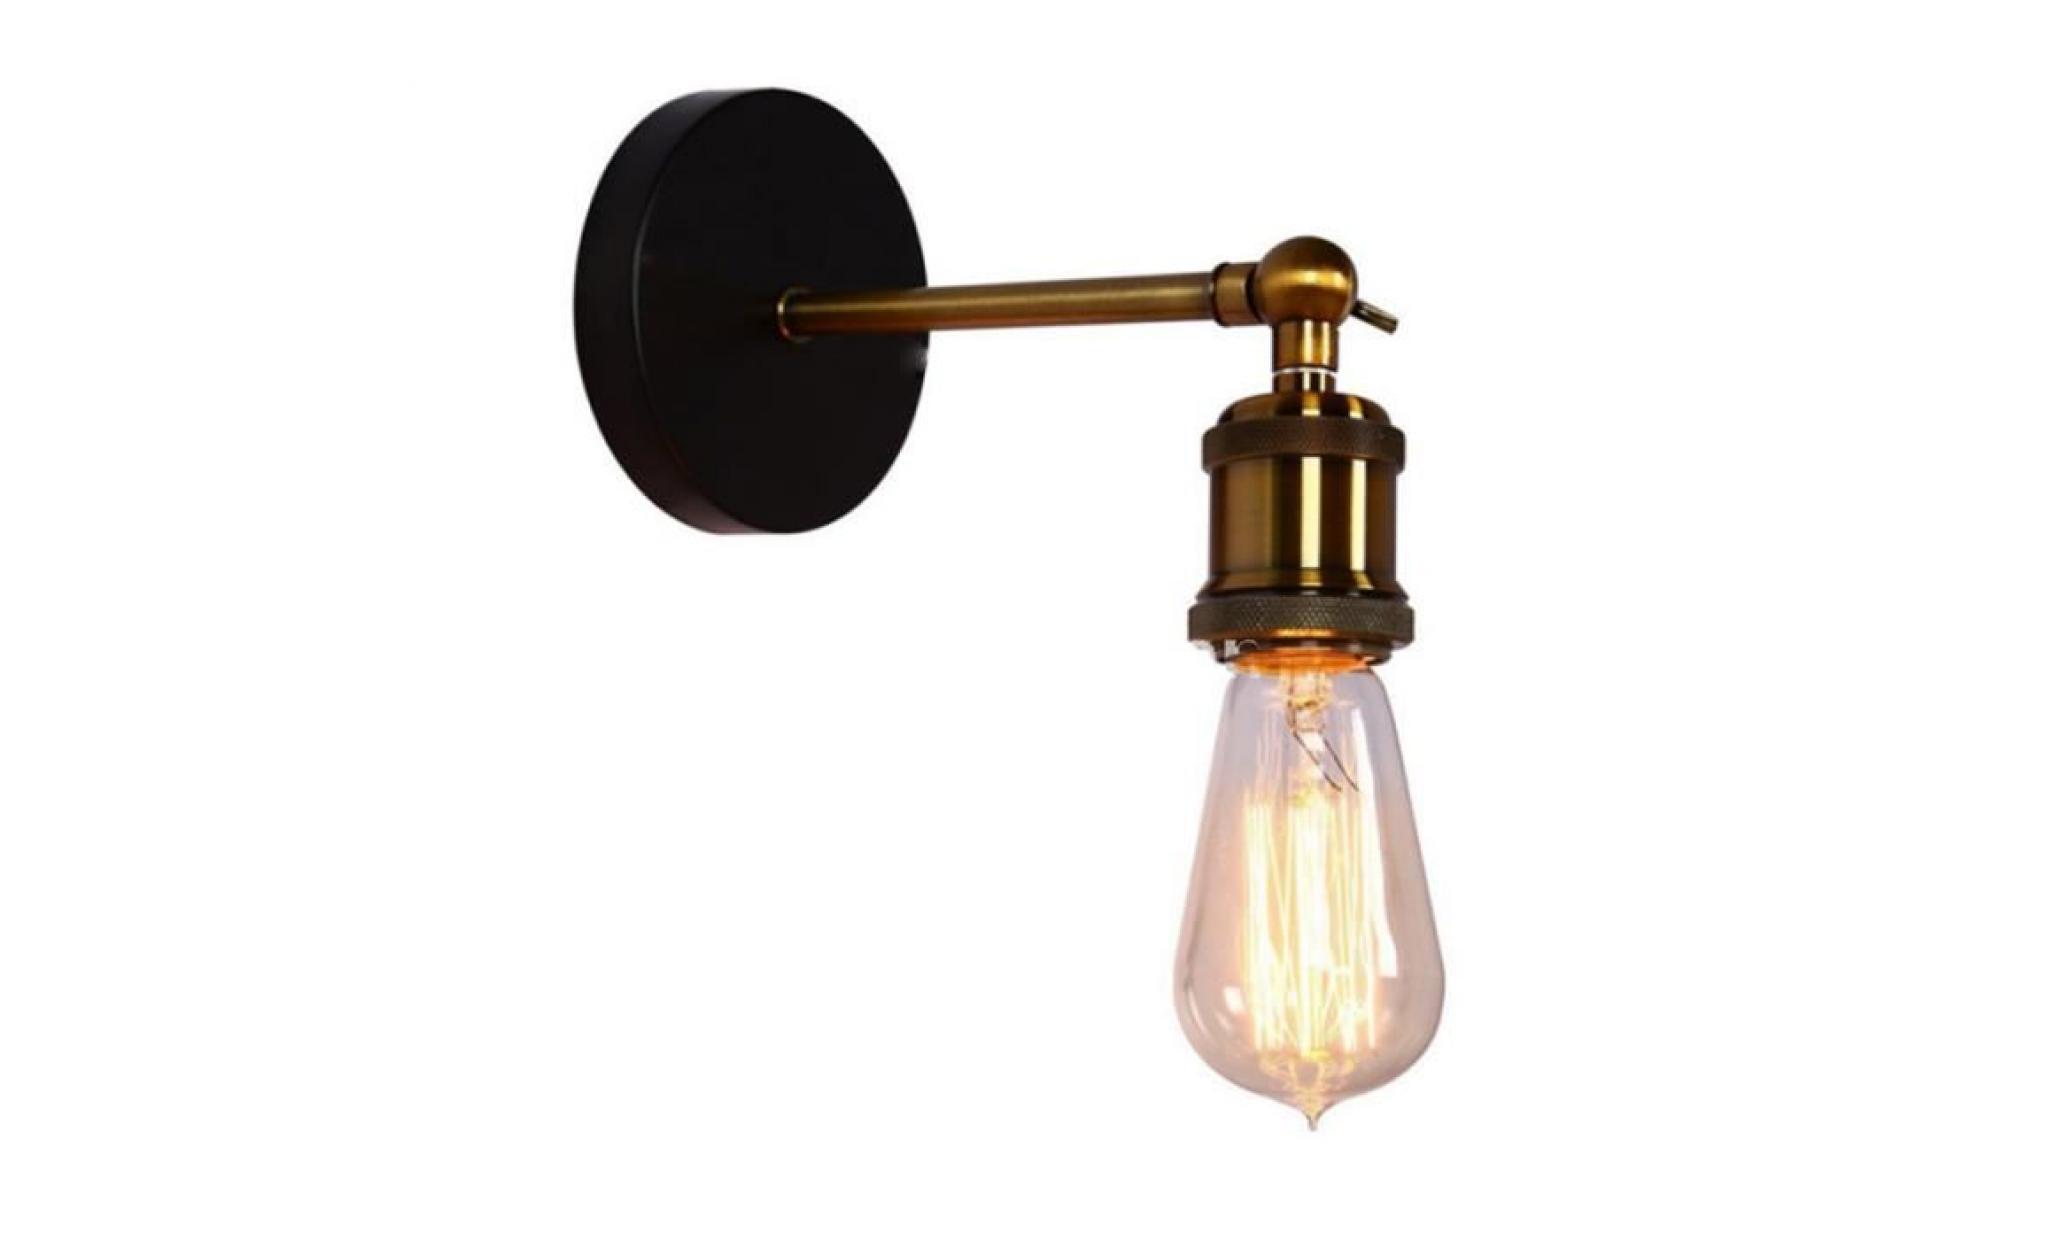 exbon rétro luminaire applique murale style industriel réglable finition de laiton Éclairage vintage edison lampe douille e27 pour p